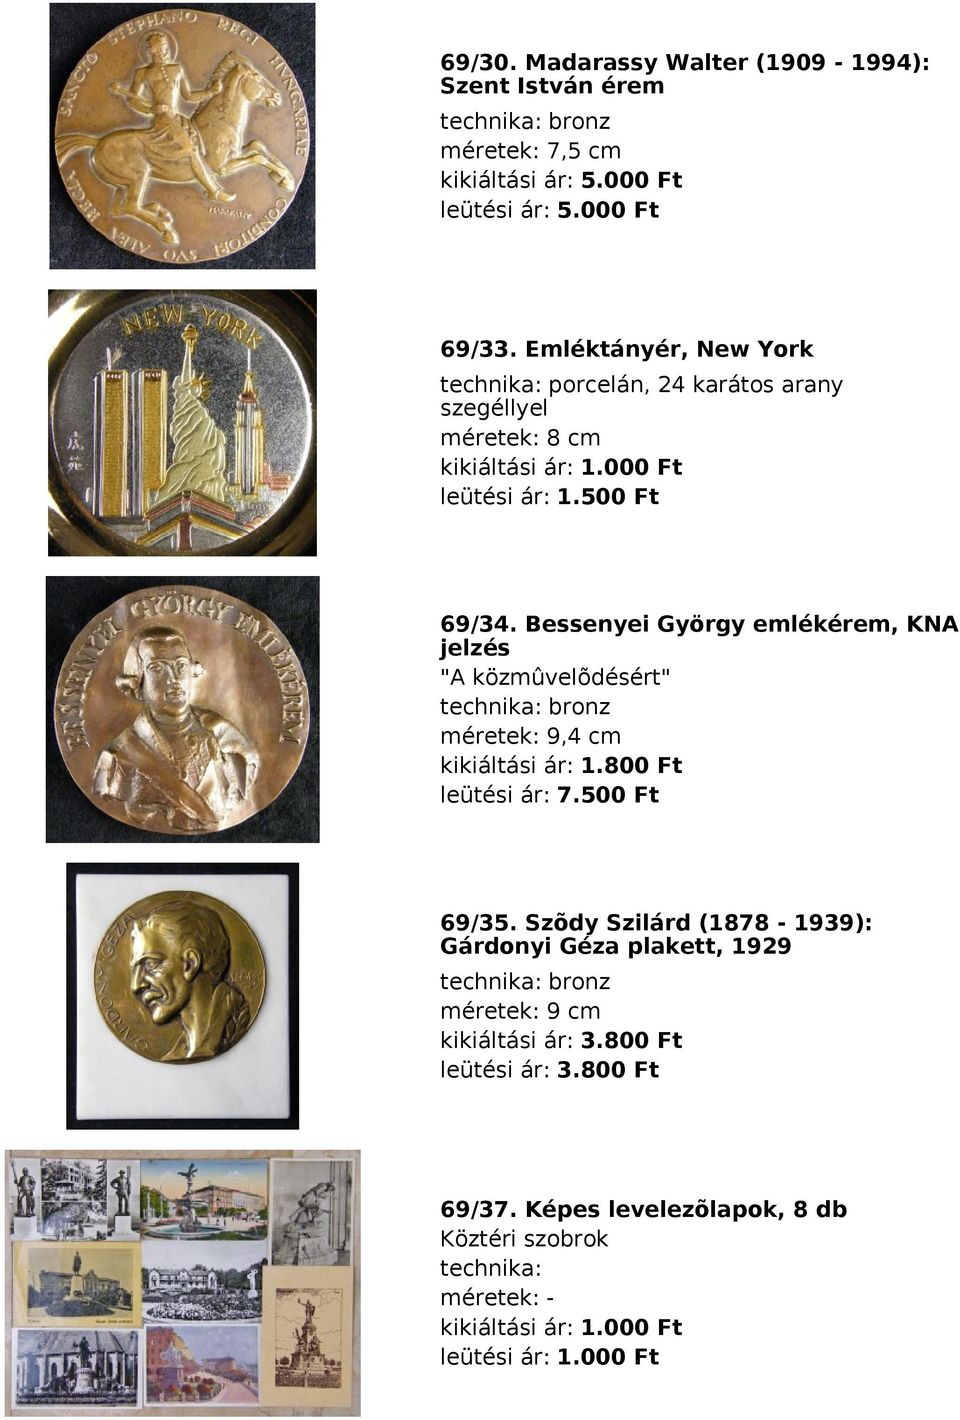 Bessenyei György emlékérem, KNA jelzés "A közmûvelõdésért" technika: bronz méretek: 9,4 cm kikiáltási ár: 1.800 Ft leütési ár: 7.500 Ft 69/35.